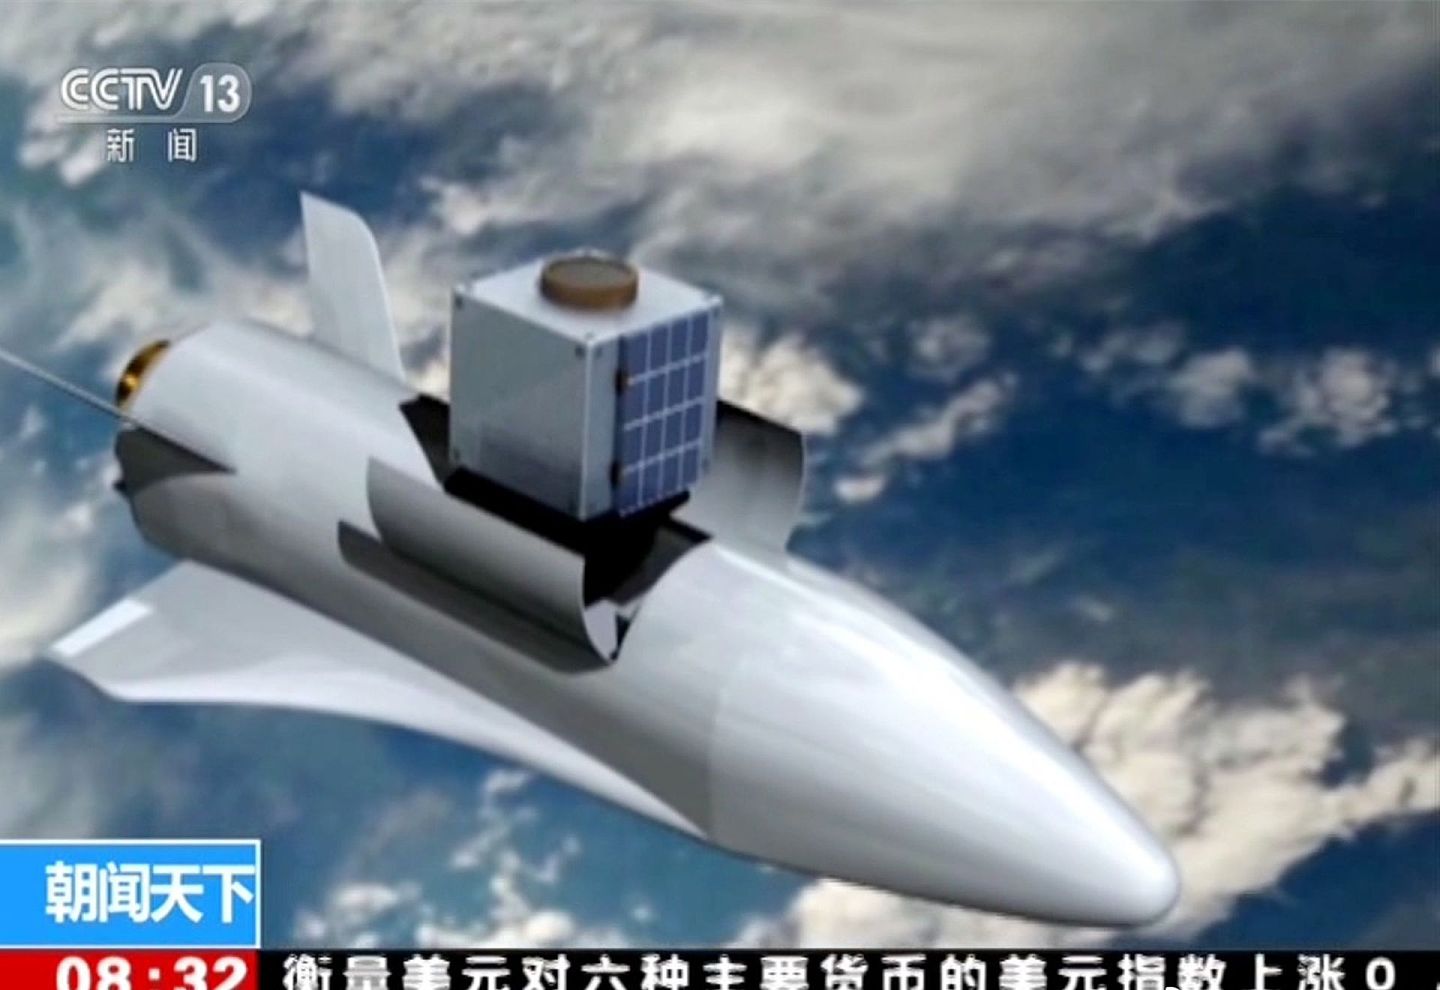 中国正在研制的“空天飞机”被称为“腾云工程”。（中国央视截图）